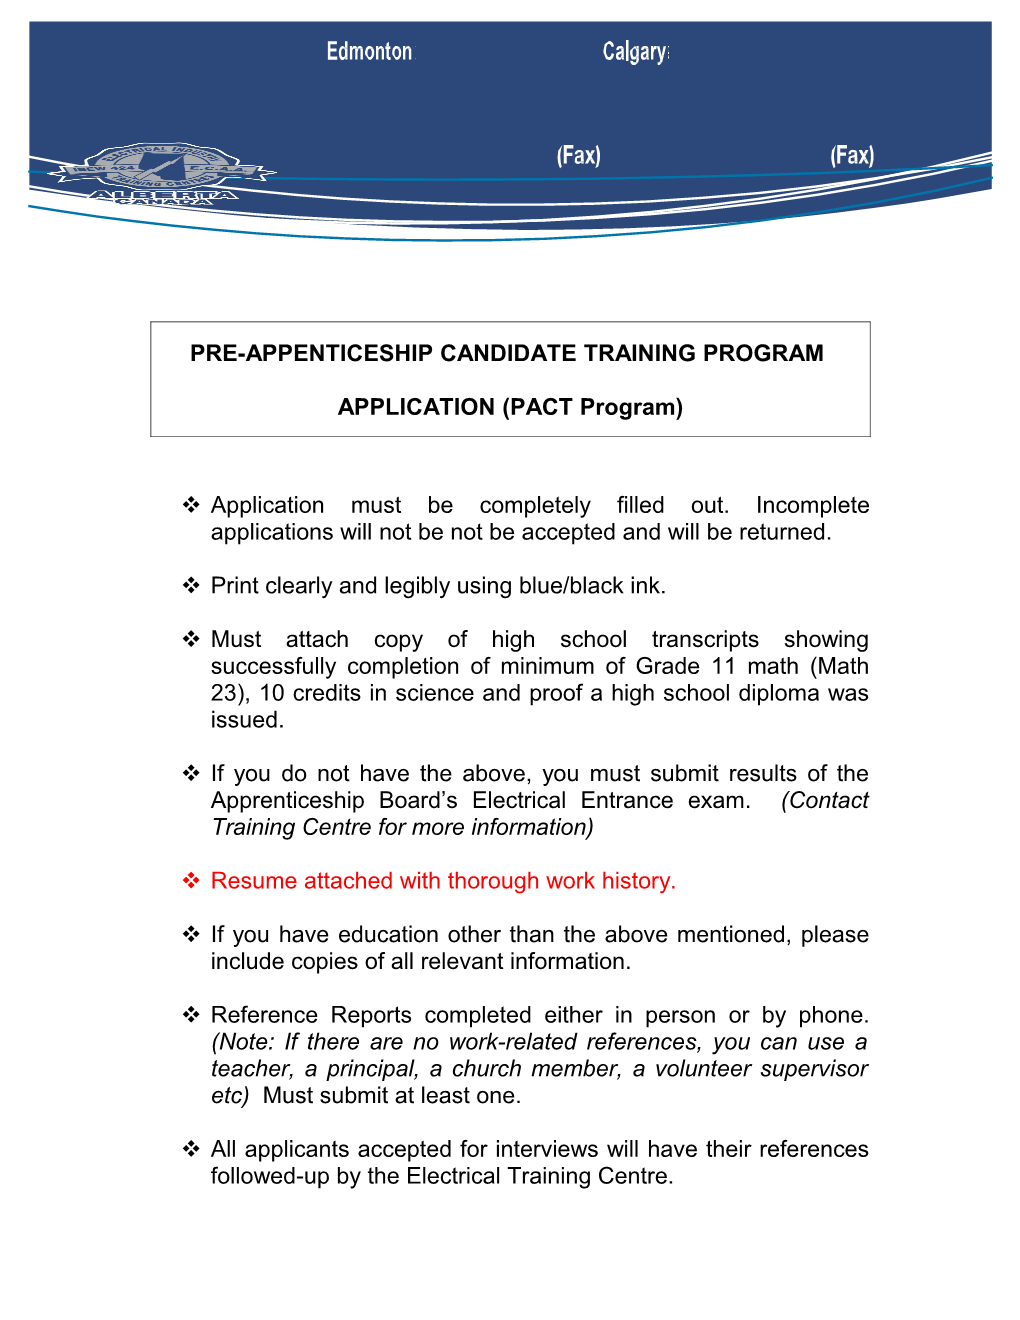 Pre-Appenticeship Candidate Training Program